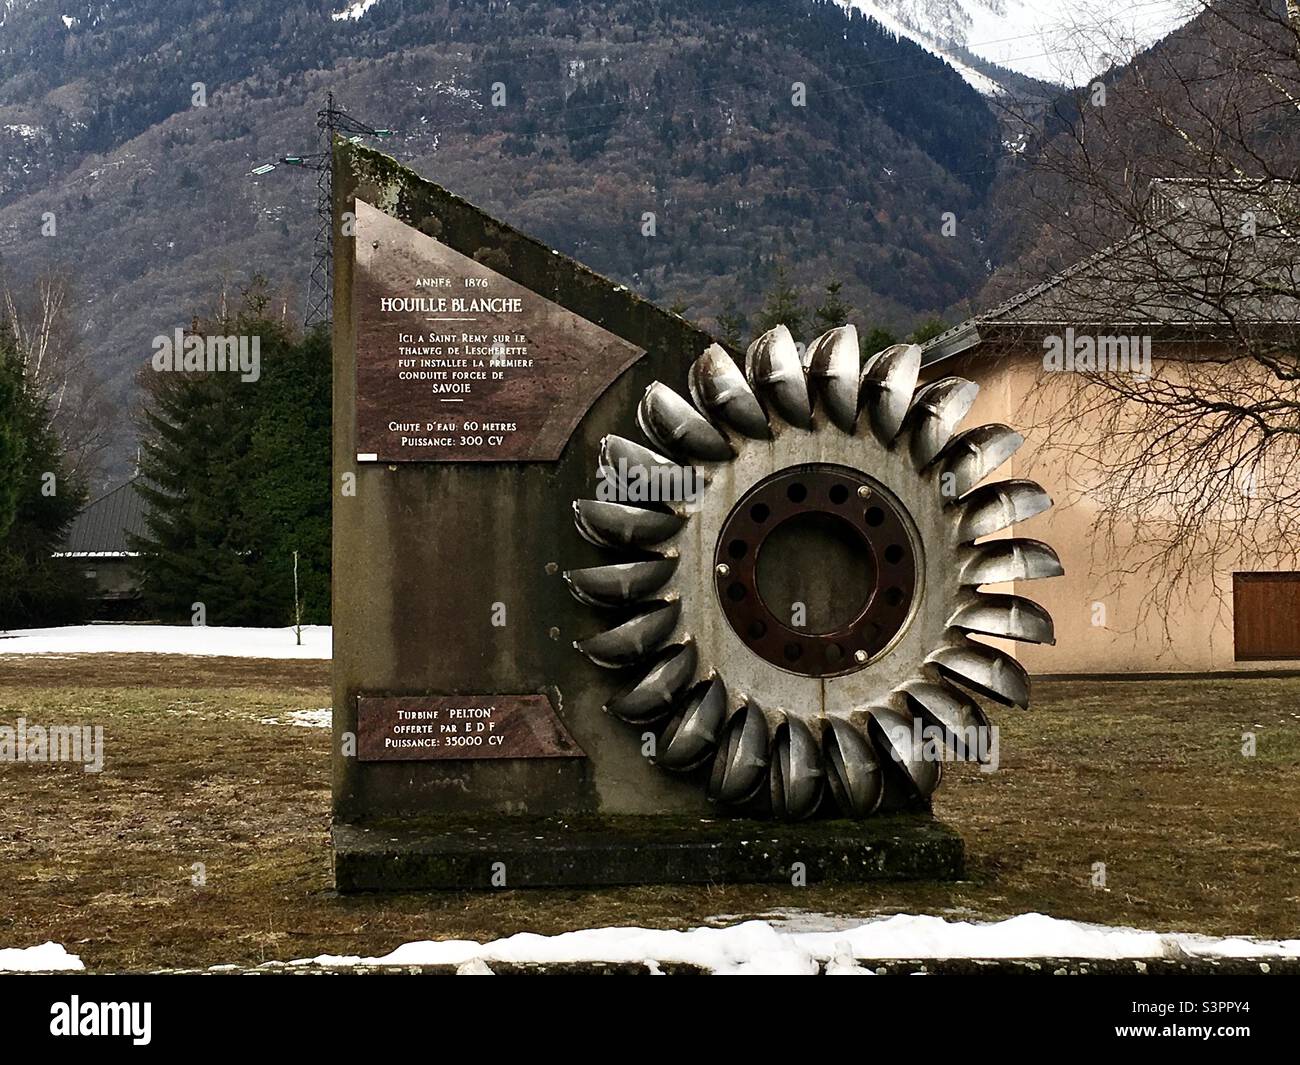 Turbine Pelton offerte par EDF année 1876 puissance 35000 CV. Houille Blanche « ici à St Rémy sur le Thalweg de Lescherette fut installée la première conduite forcée de Savoie. Chute d’eau 60m. » Stock Photo